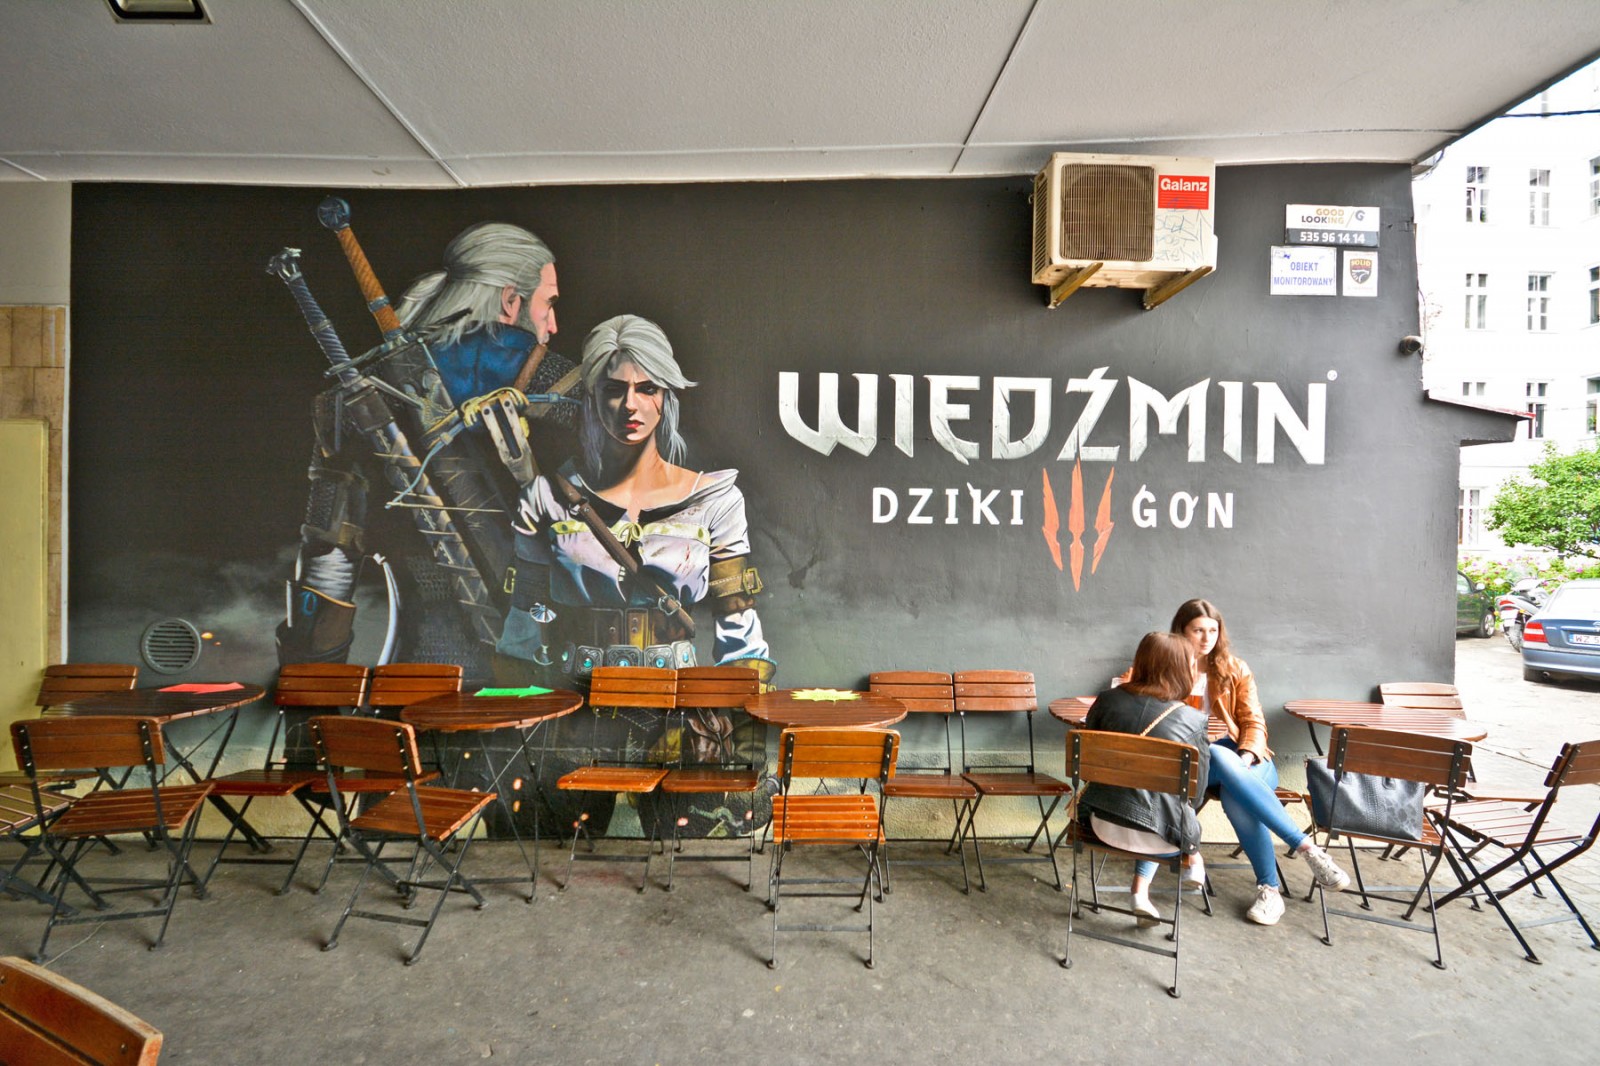 Wiedźmin dziki gon gra mural reklamowy na ścianie przy pawilonach w Warszawie | Reklama muralowa gry Wiedźmin Dziki Gon | Portfolio